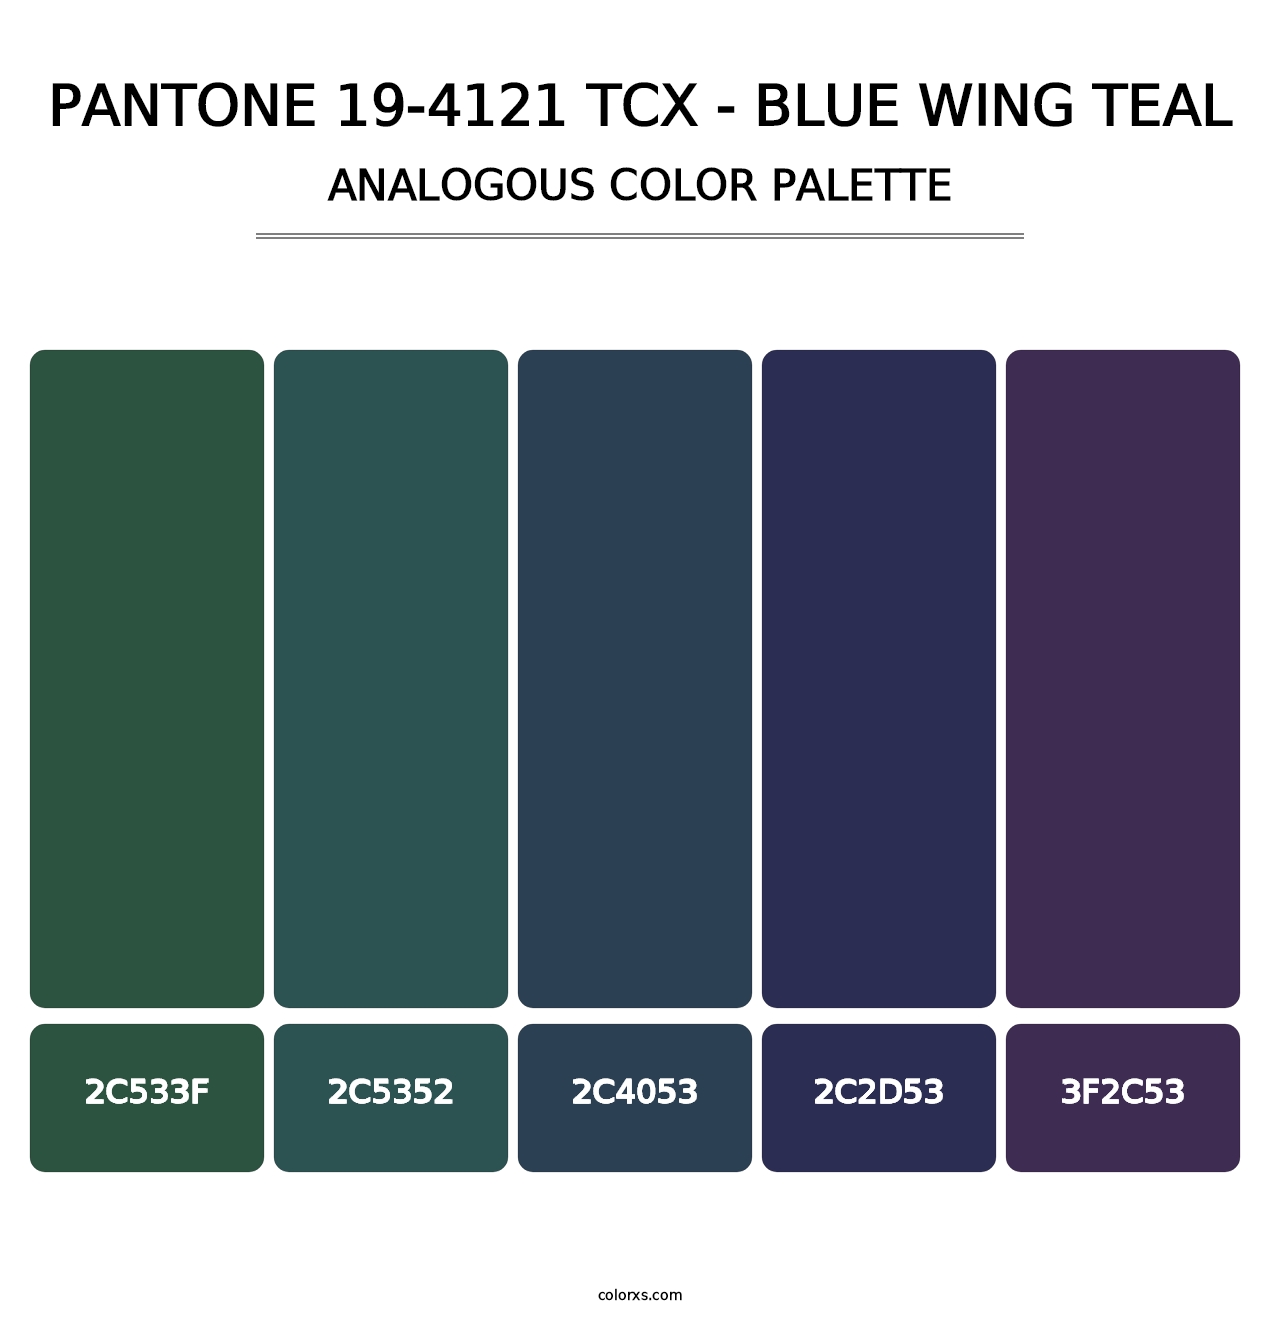 PANTONE 19-4121 TCX - Blue Wing Teal - Analogous Color Palette